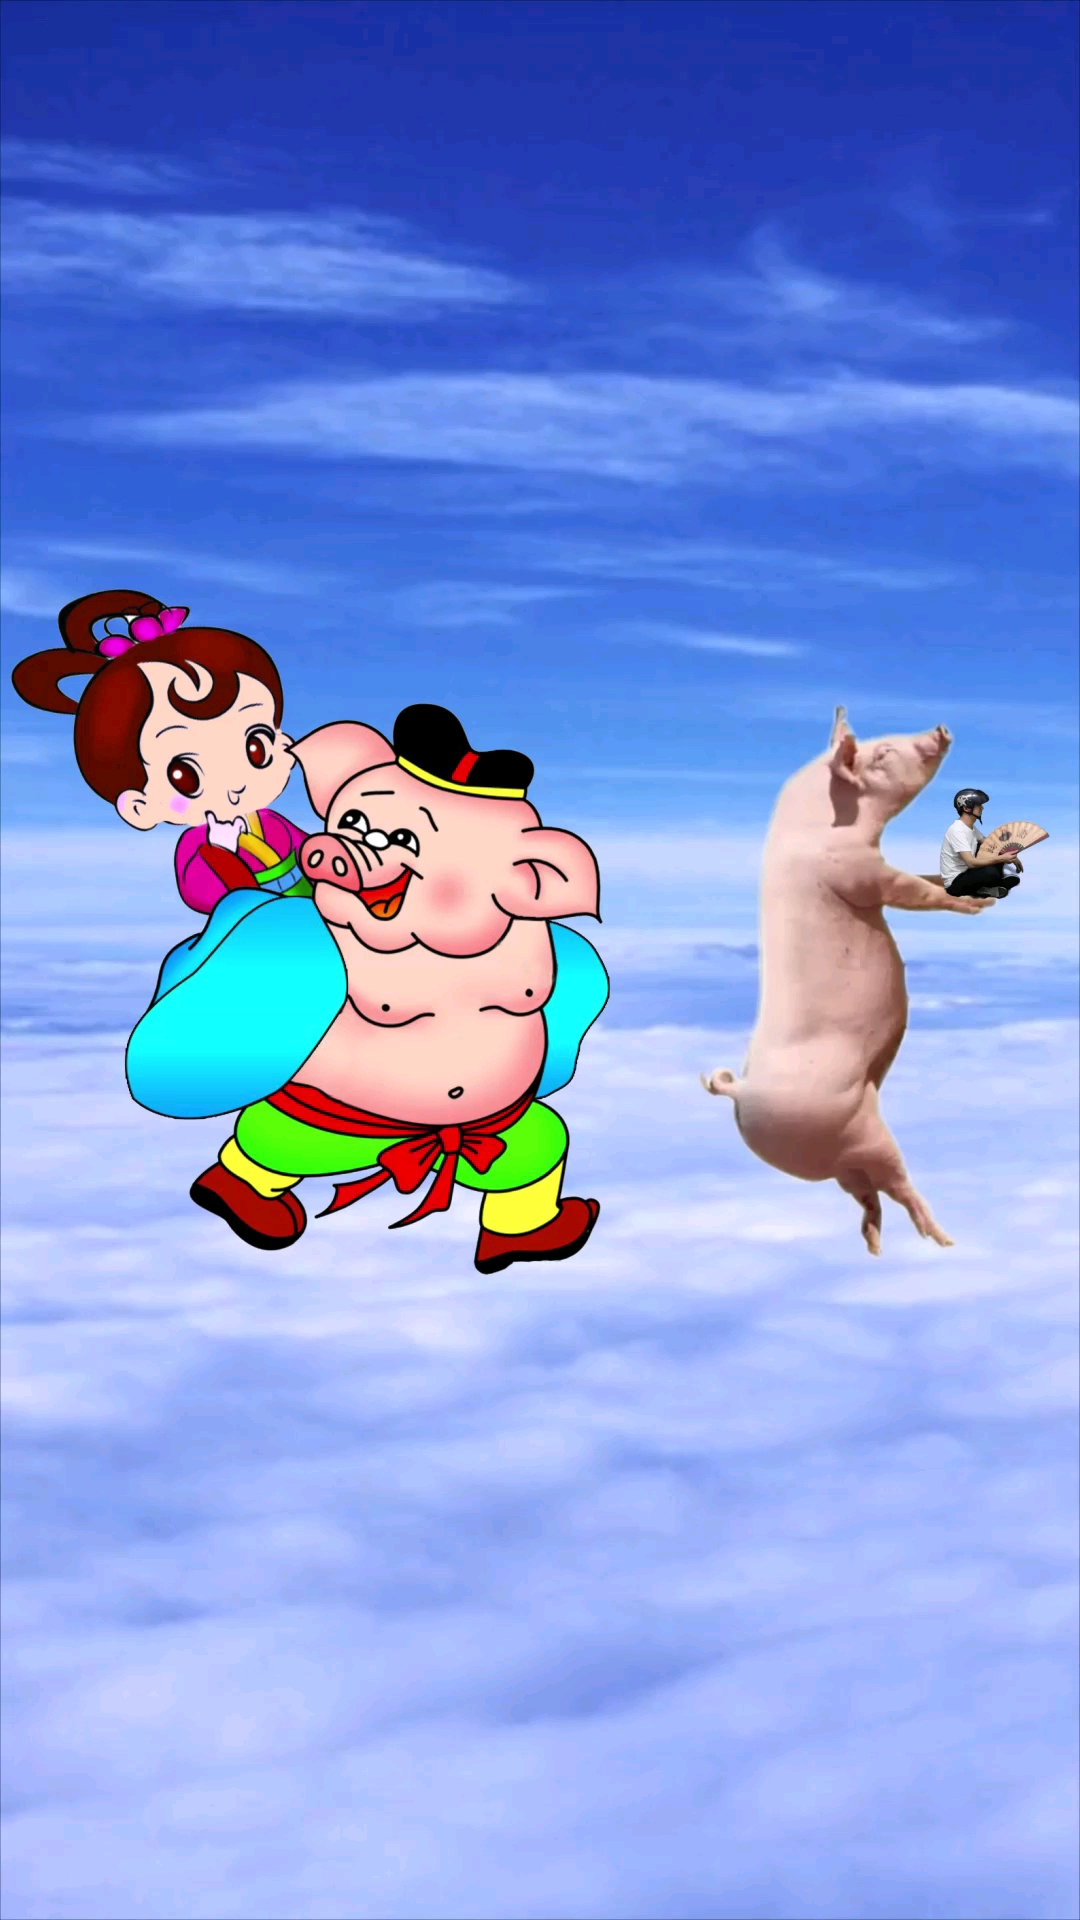 猪八戒背媳妇动画片图片